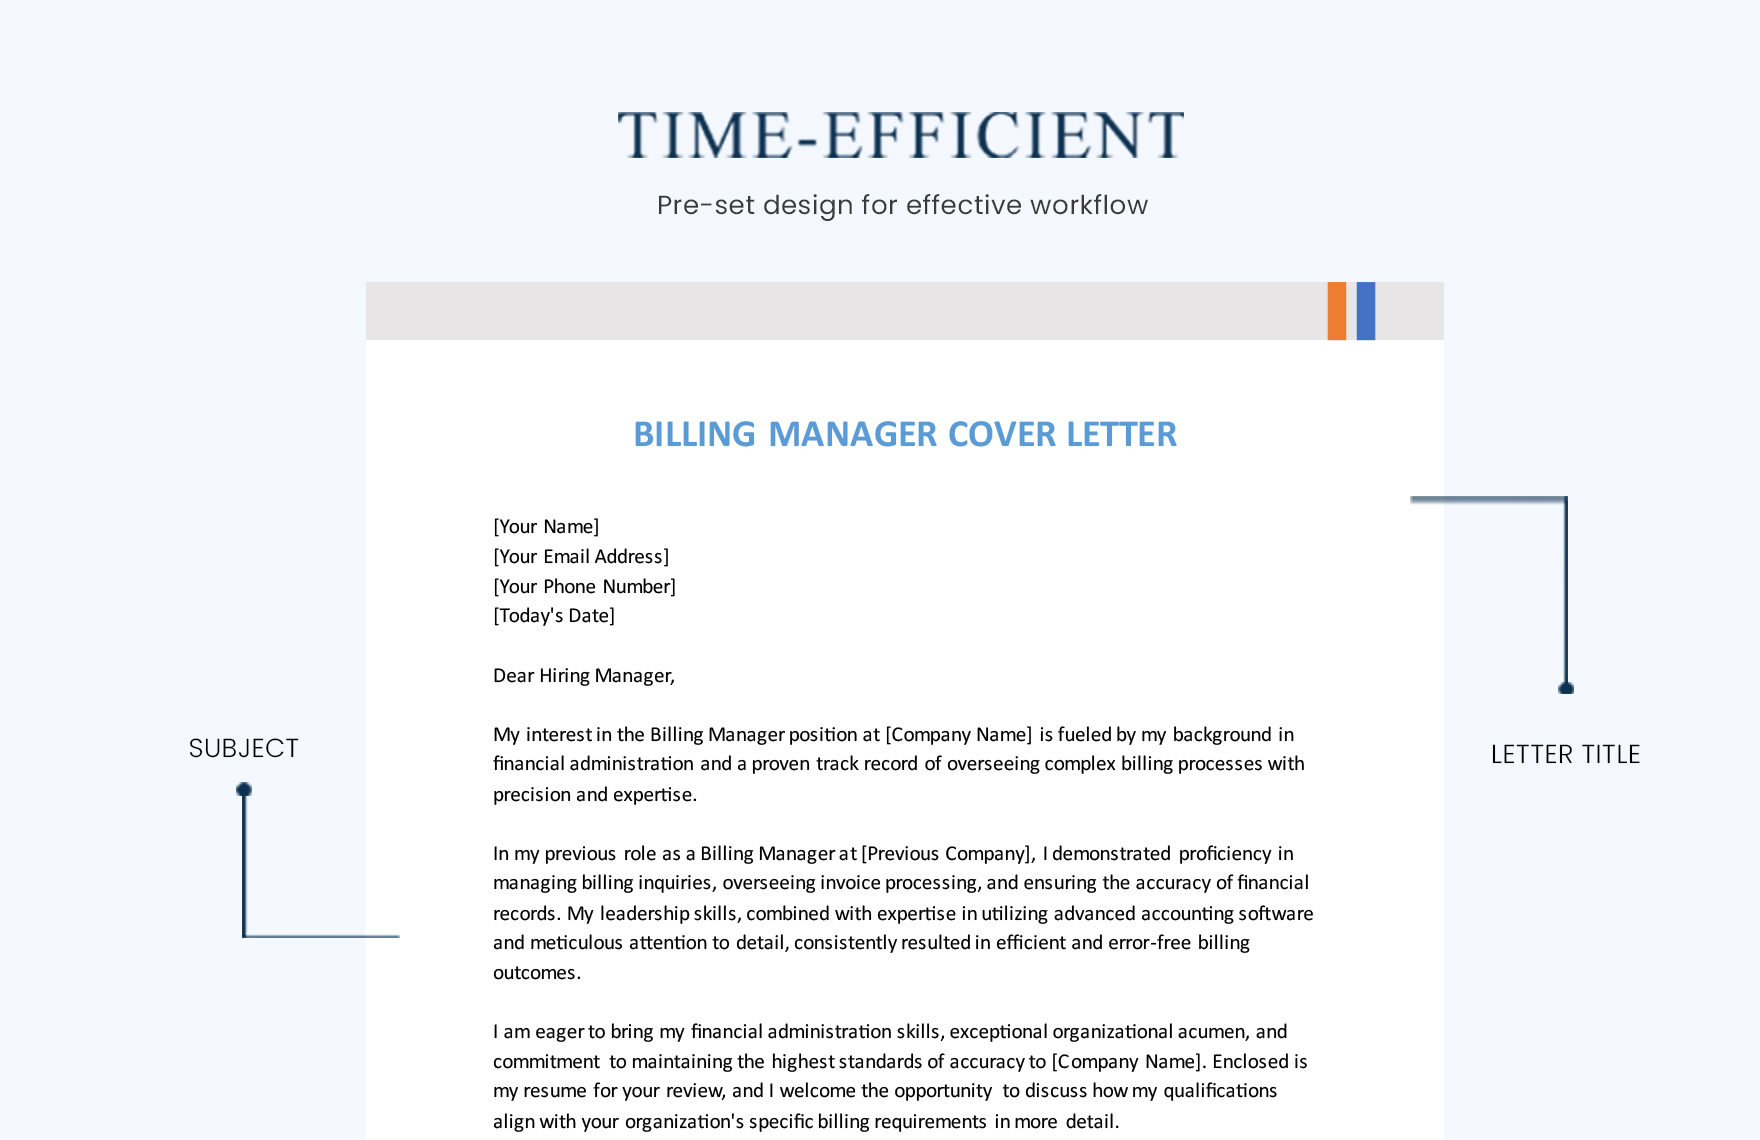 Billing Manager Cover Letter